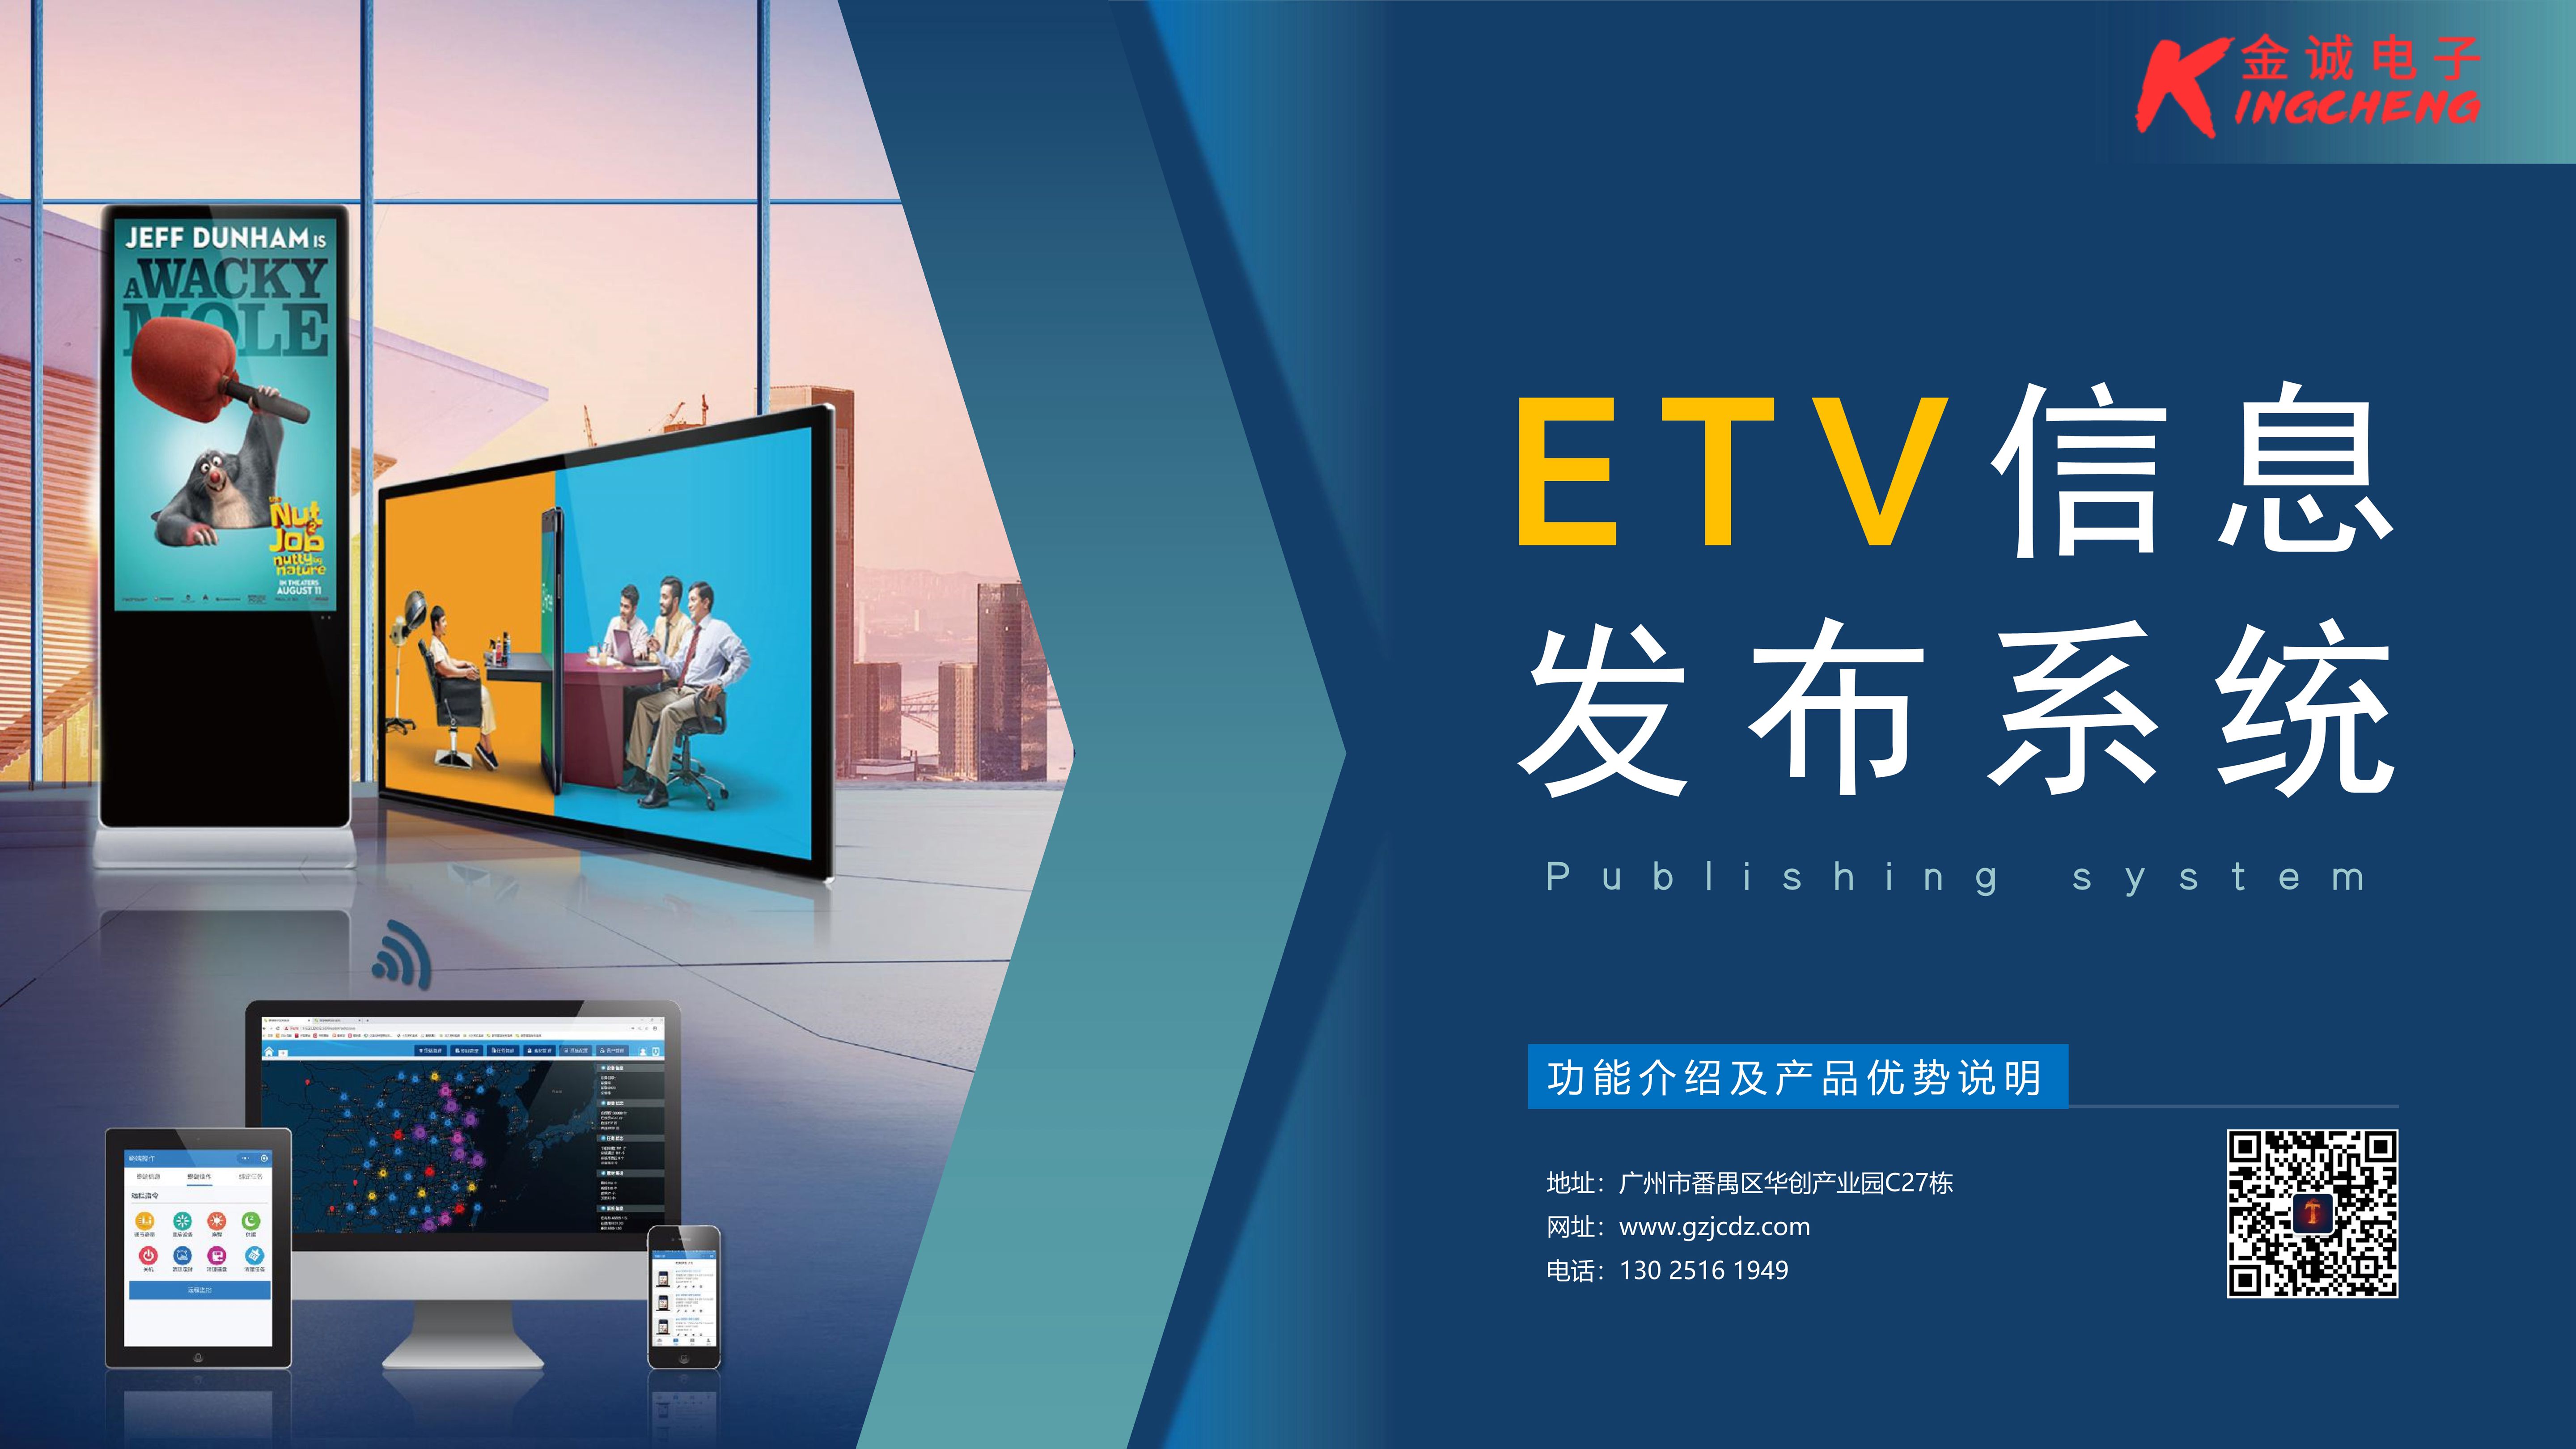 ETV_信息发布系统 产品功能介绍_1.jpg